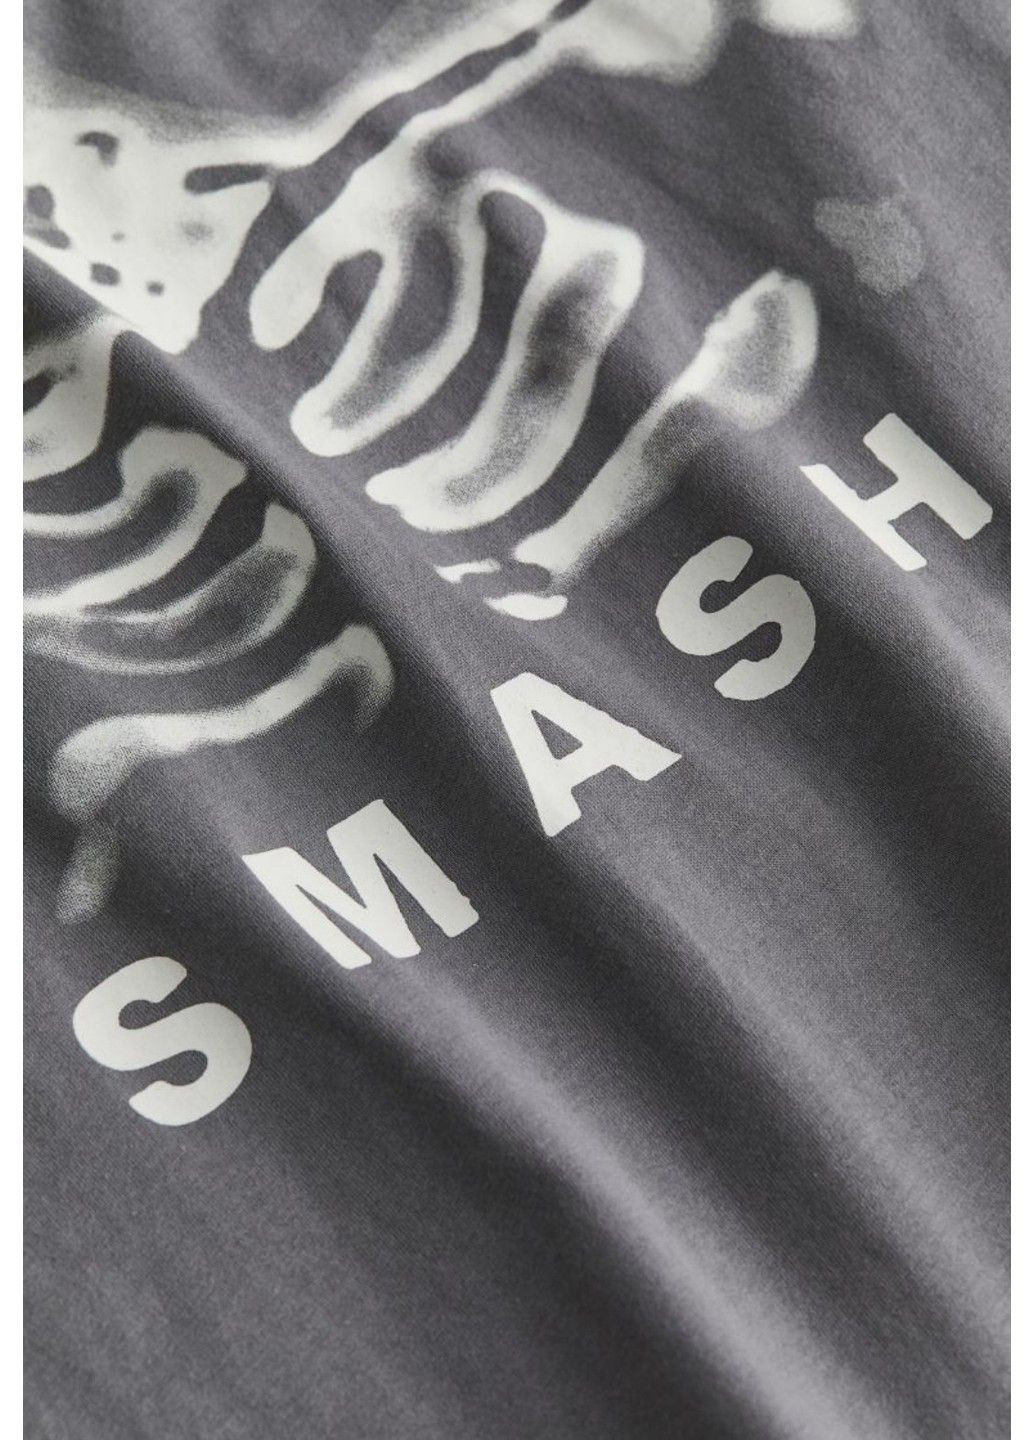 Сіра літня жіноча футболка оверсайз з принтом н&м (56919) xs сіра H&M